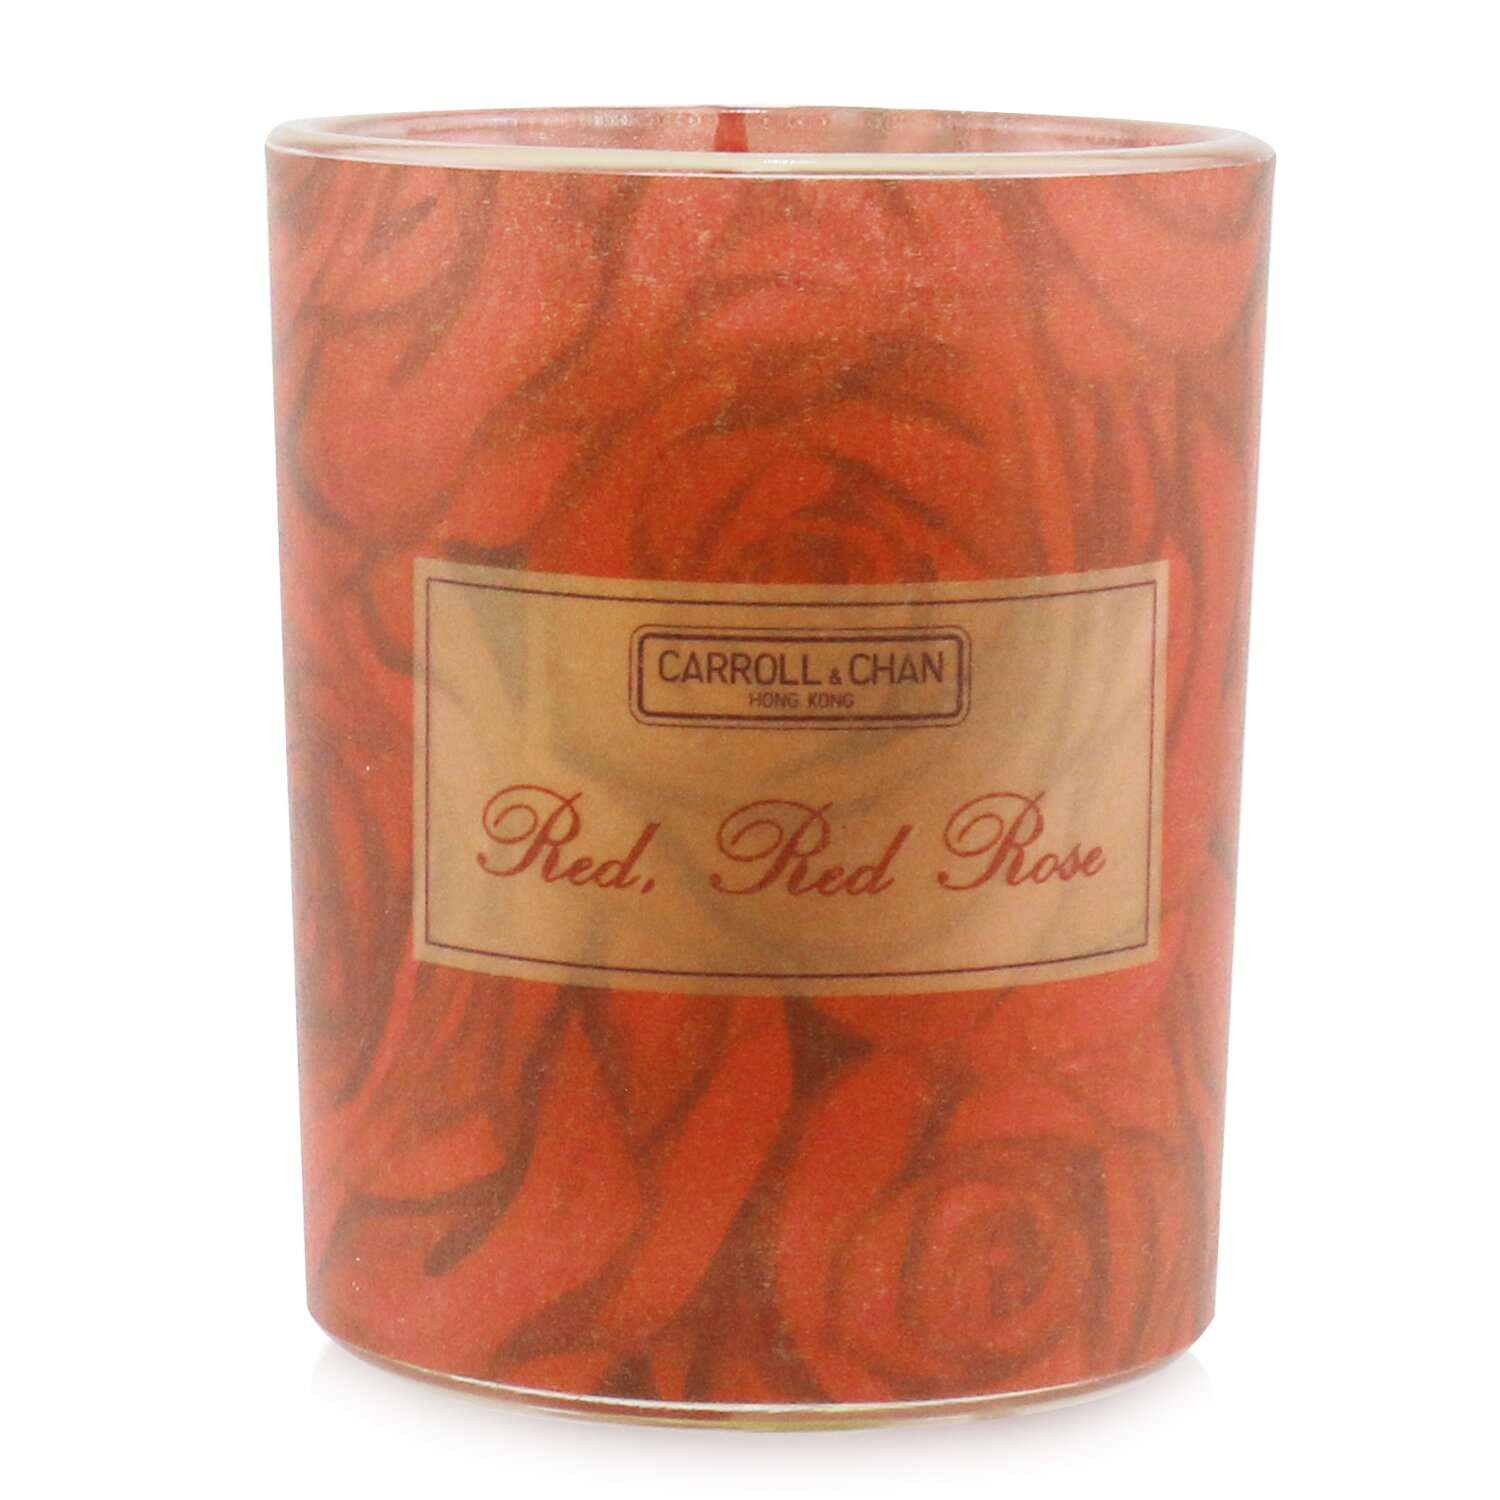 卡羅爾與陳 Carroll & Chan - 100%蜂蠟芳香蠟燭 - 紅玫瑰